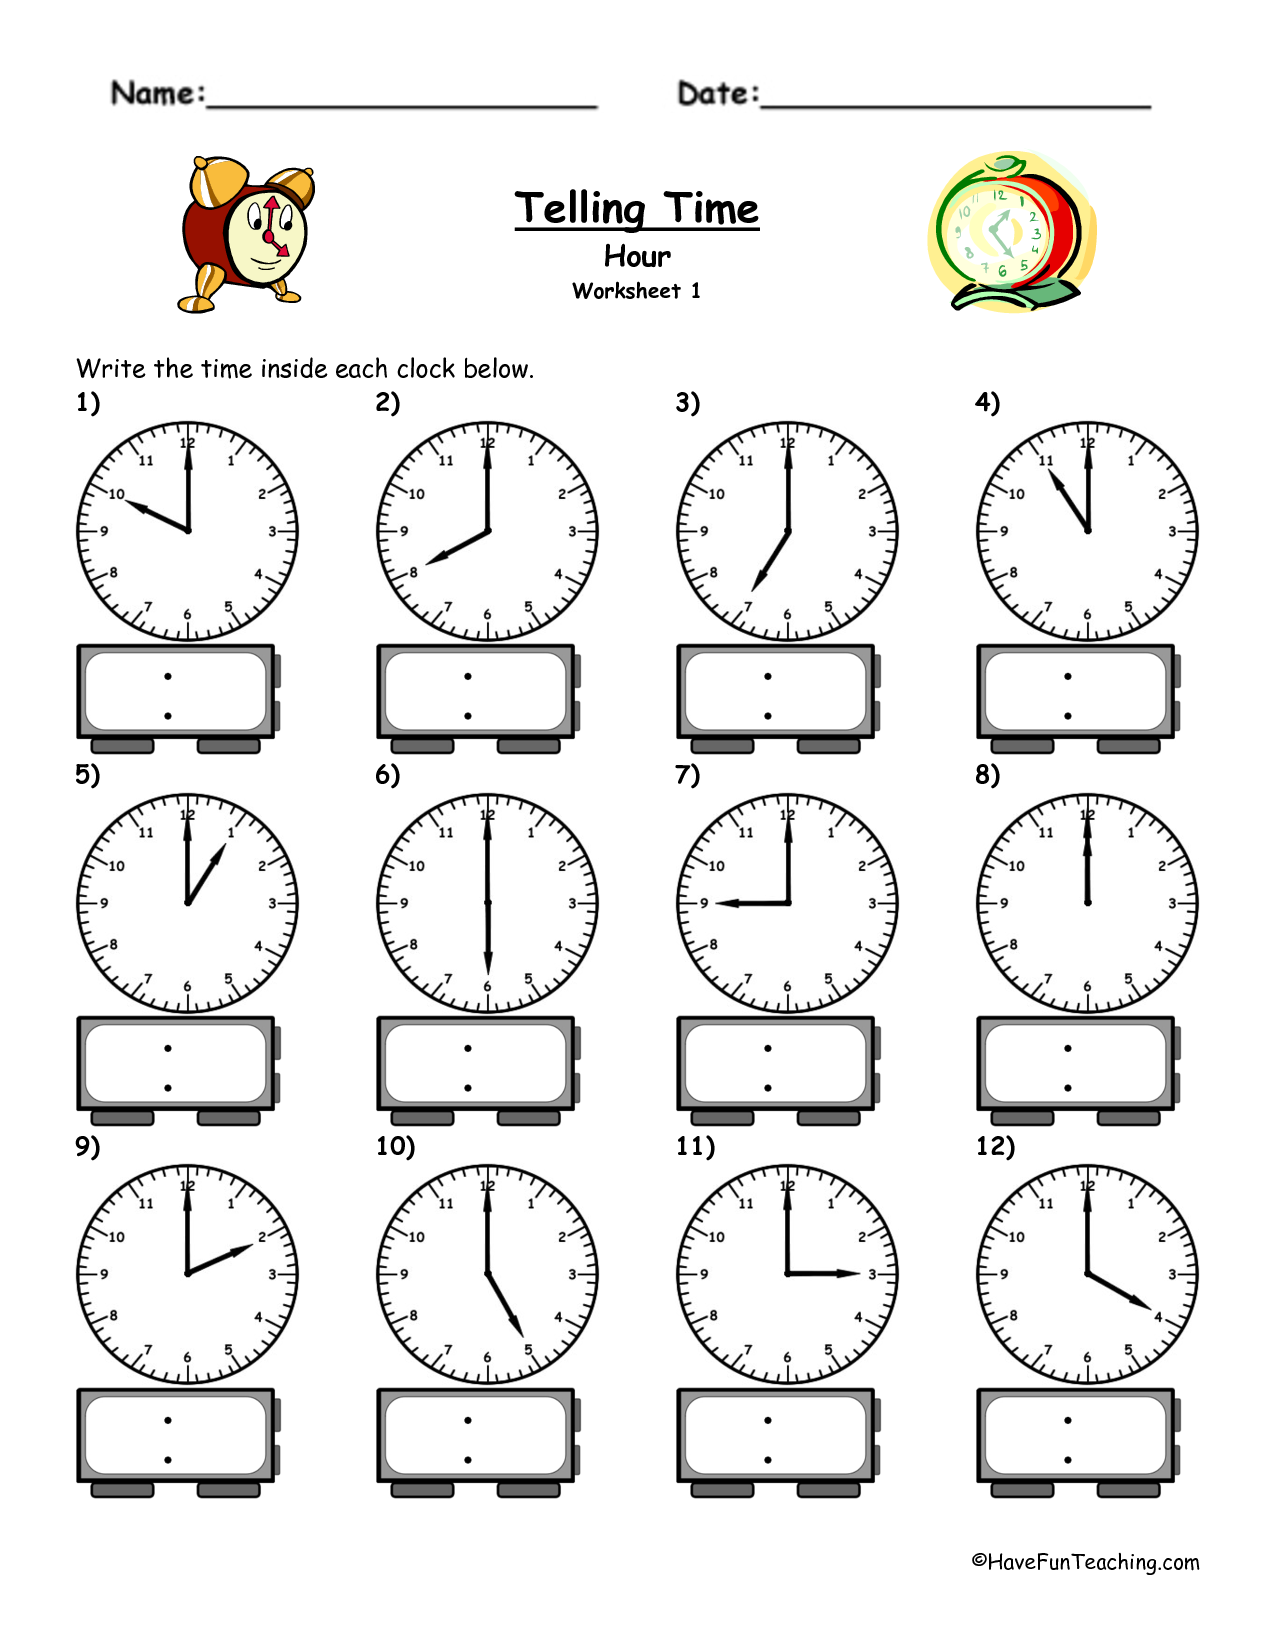 4-best-images-of-printable-clock-worksheet-telling-time-telling-time-worksheets-free-telling